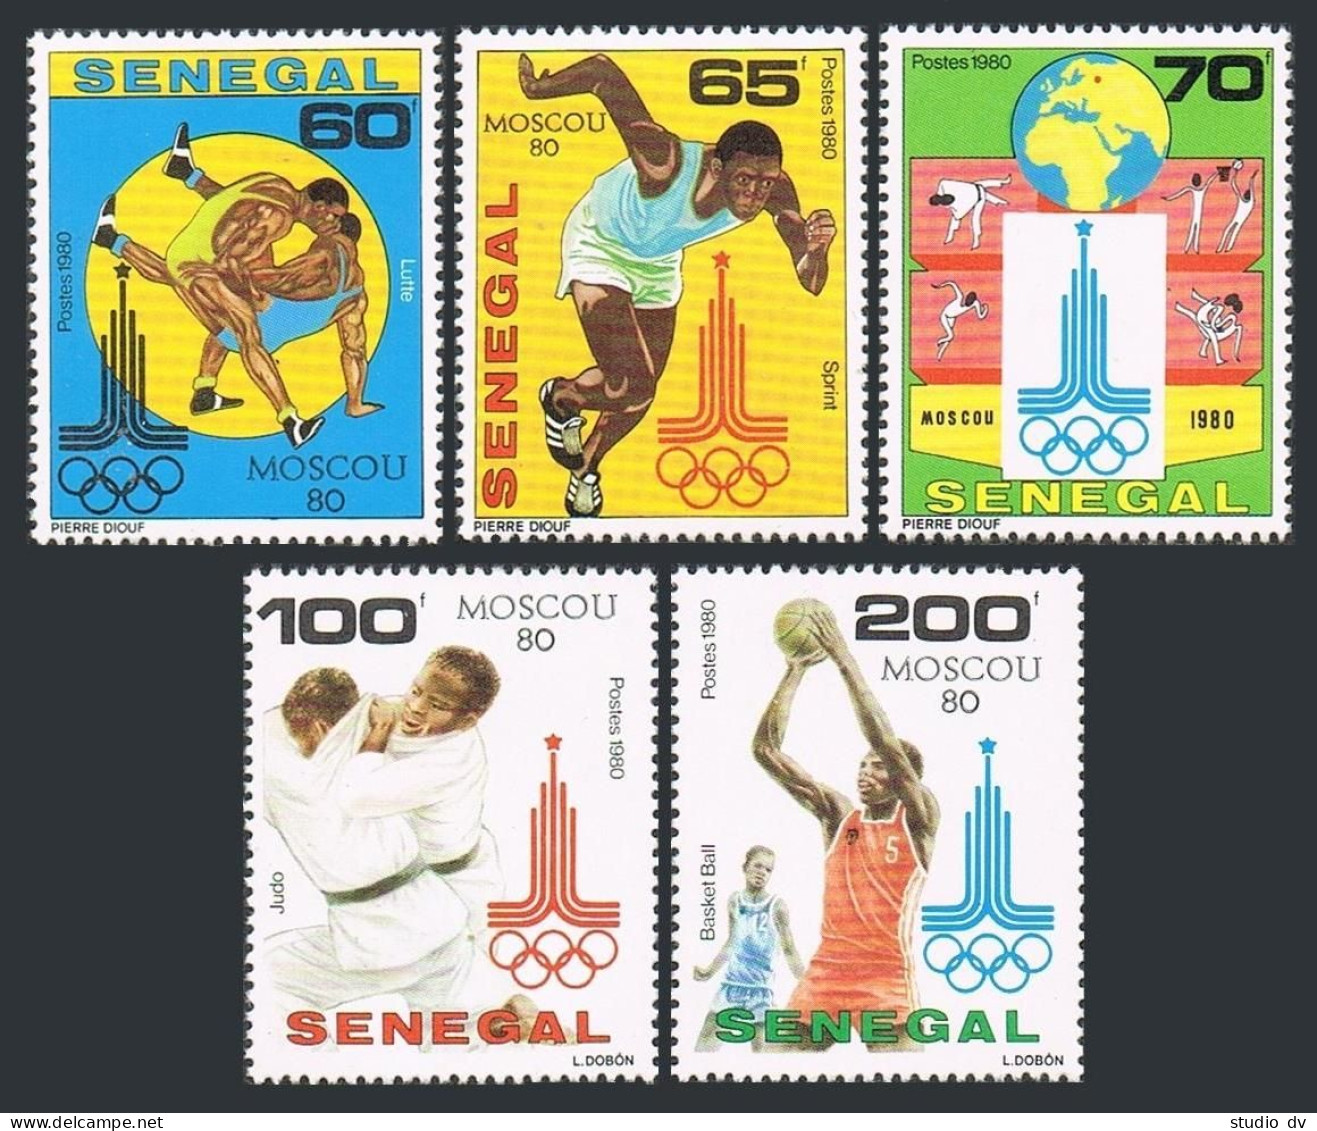 Senegal 534-538,539, MNH. Michel 731-735, Bl.38. Olympics Moscow-1980. Judo, - Senegal (1960-...)